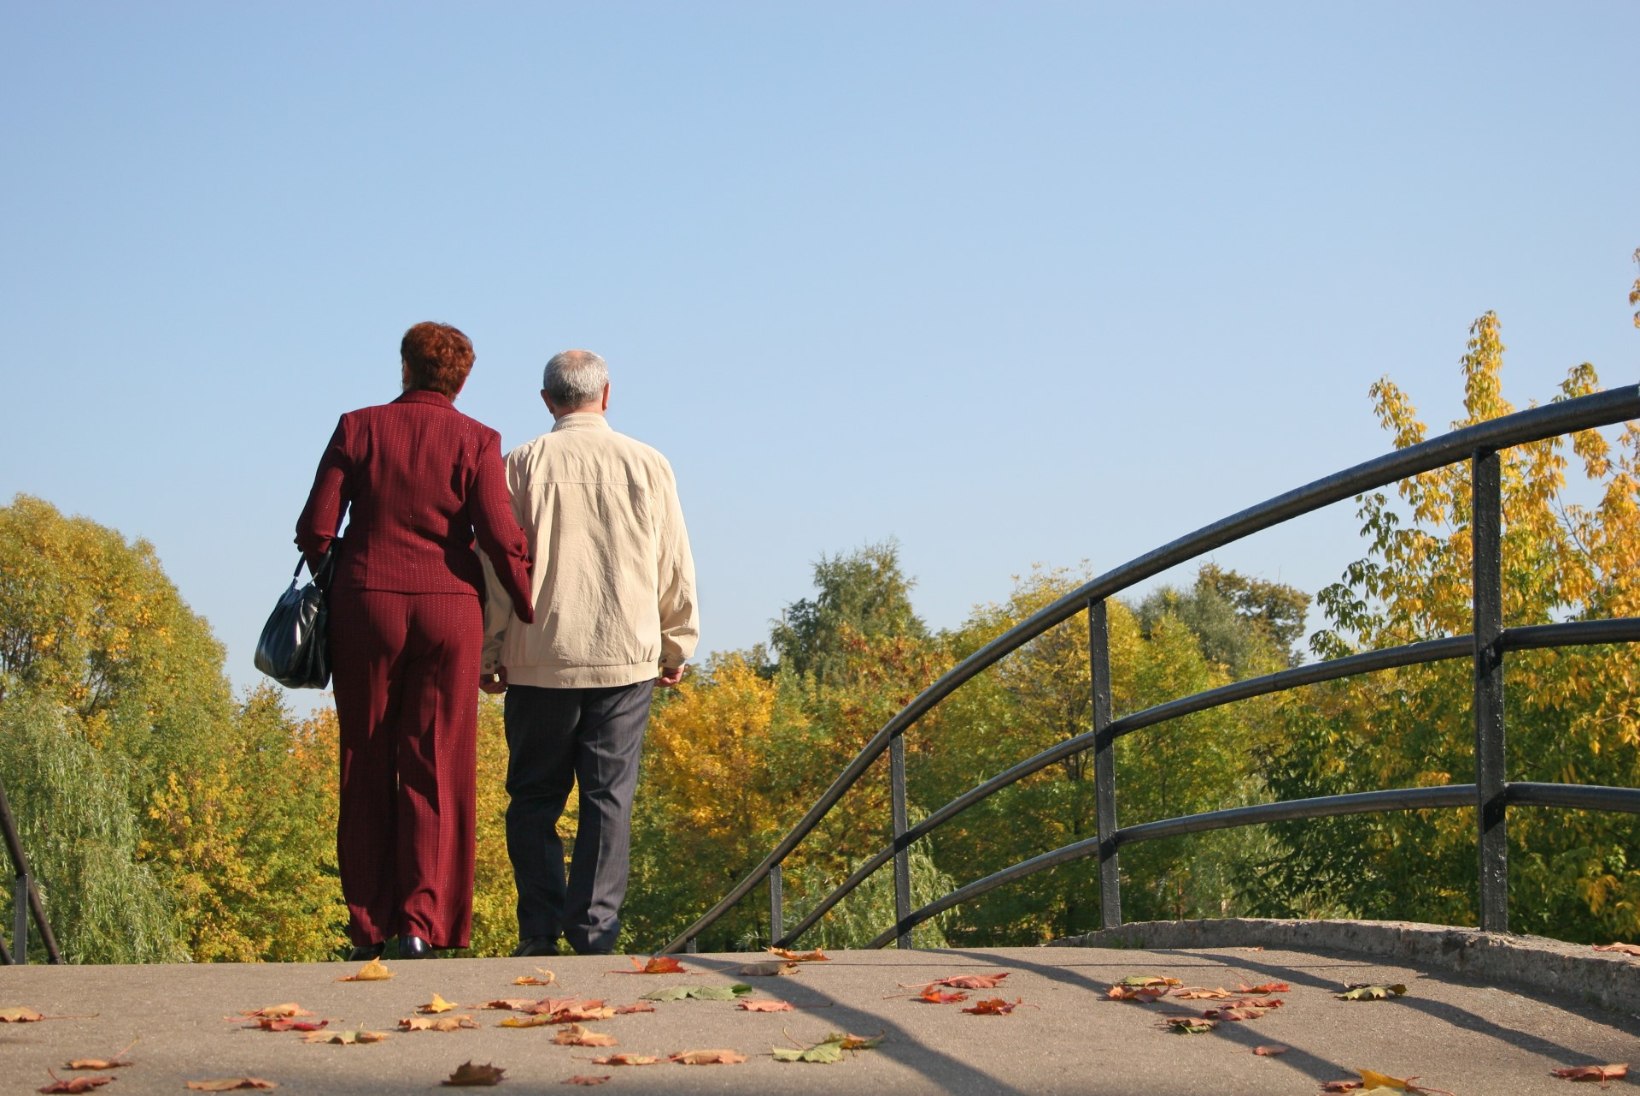 Millised varased faktorid mõjutavad dementsuse tekkimist kõrgemas eas?